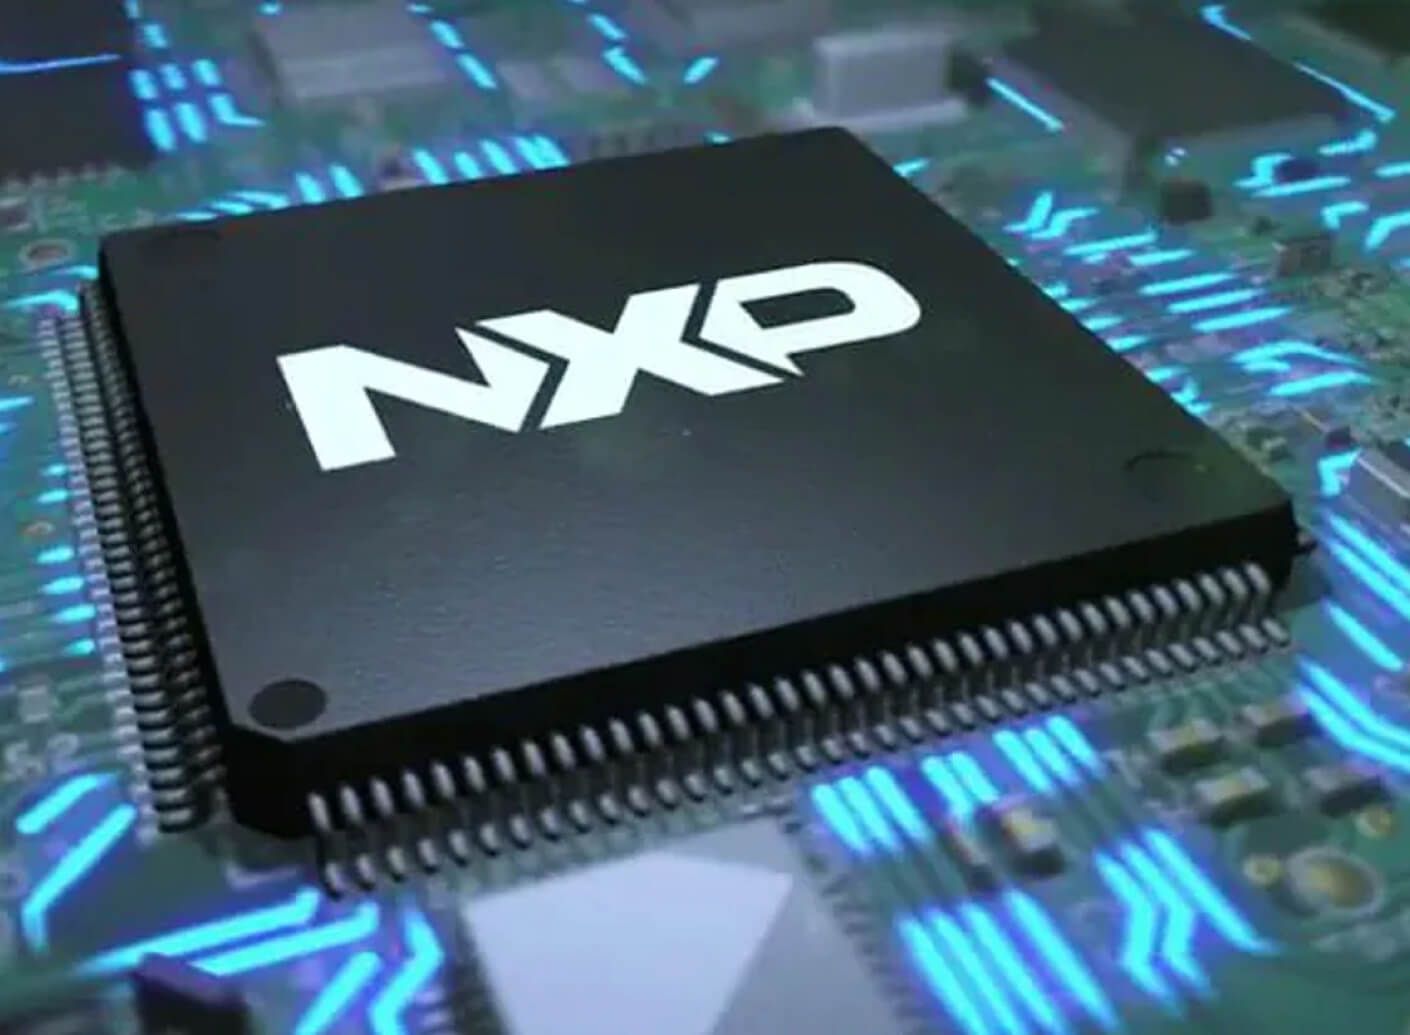 NXP chip